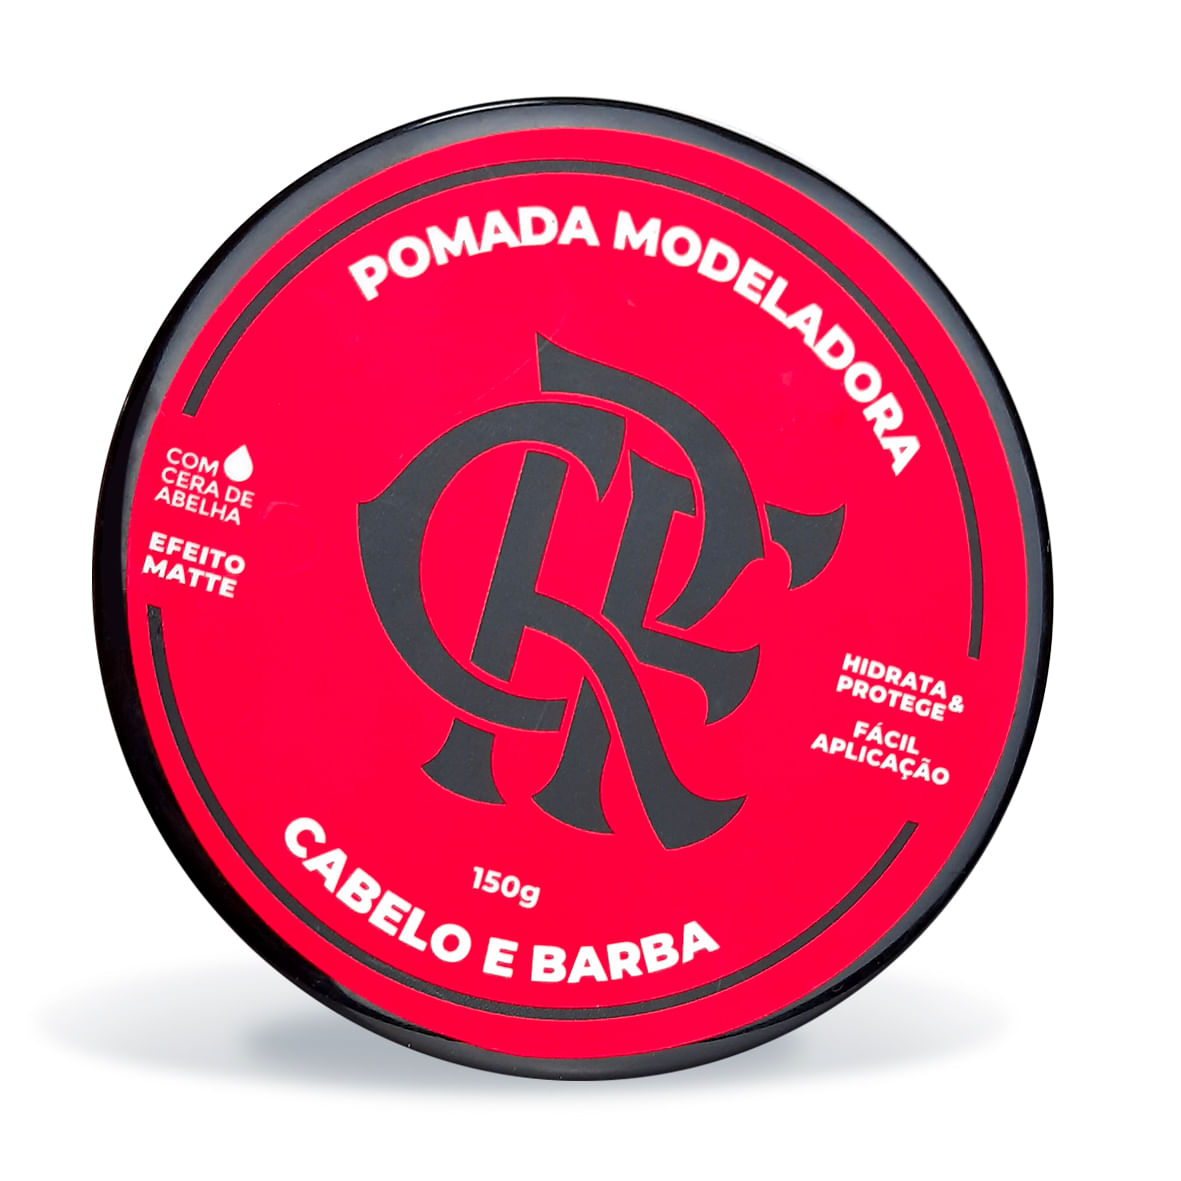 Pomada Flamengo Modeladora Cabelo e Barba Efeito Matte 150g